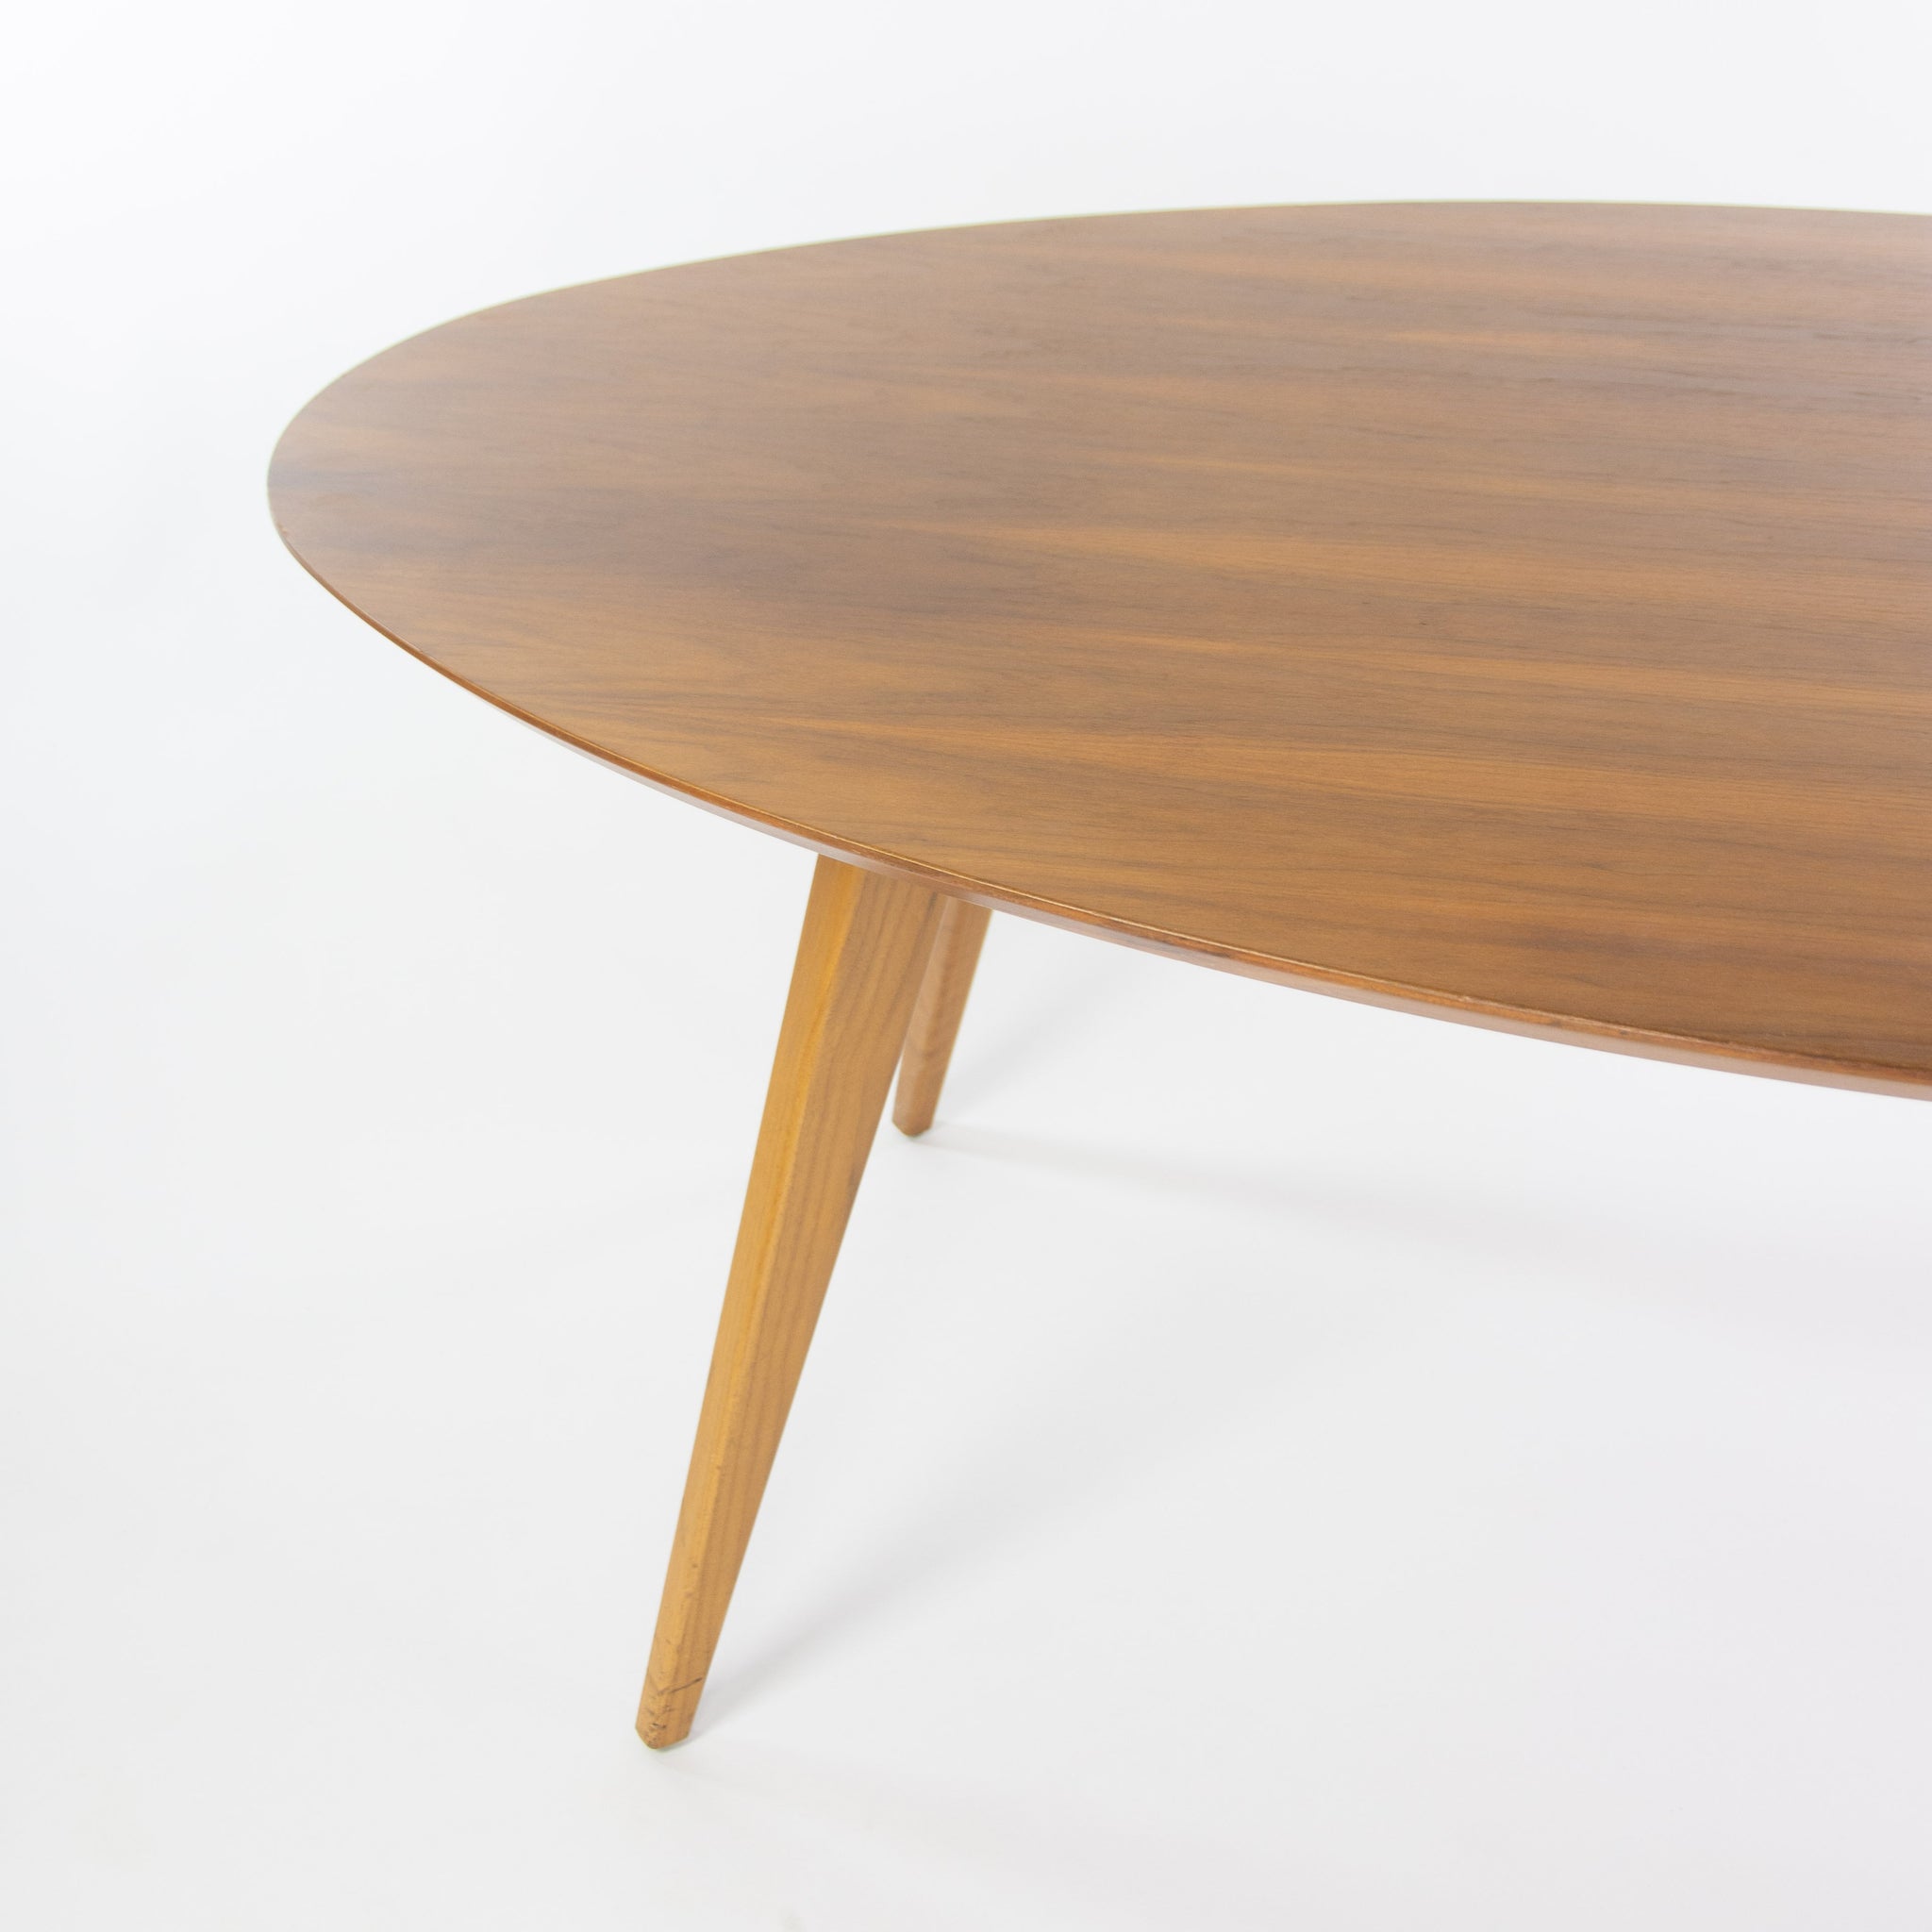 Custom Oval Table